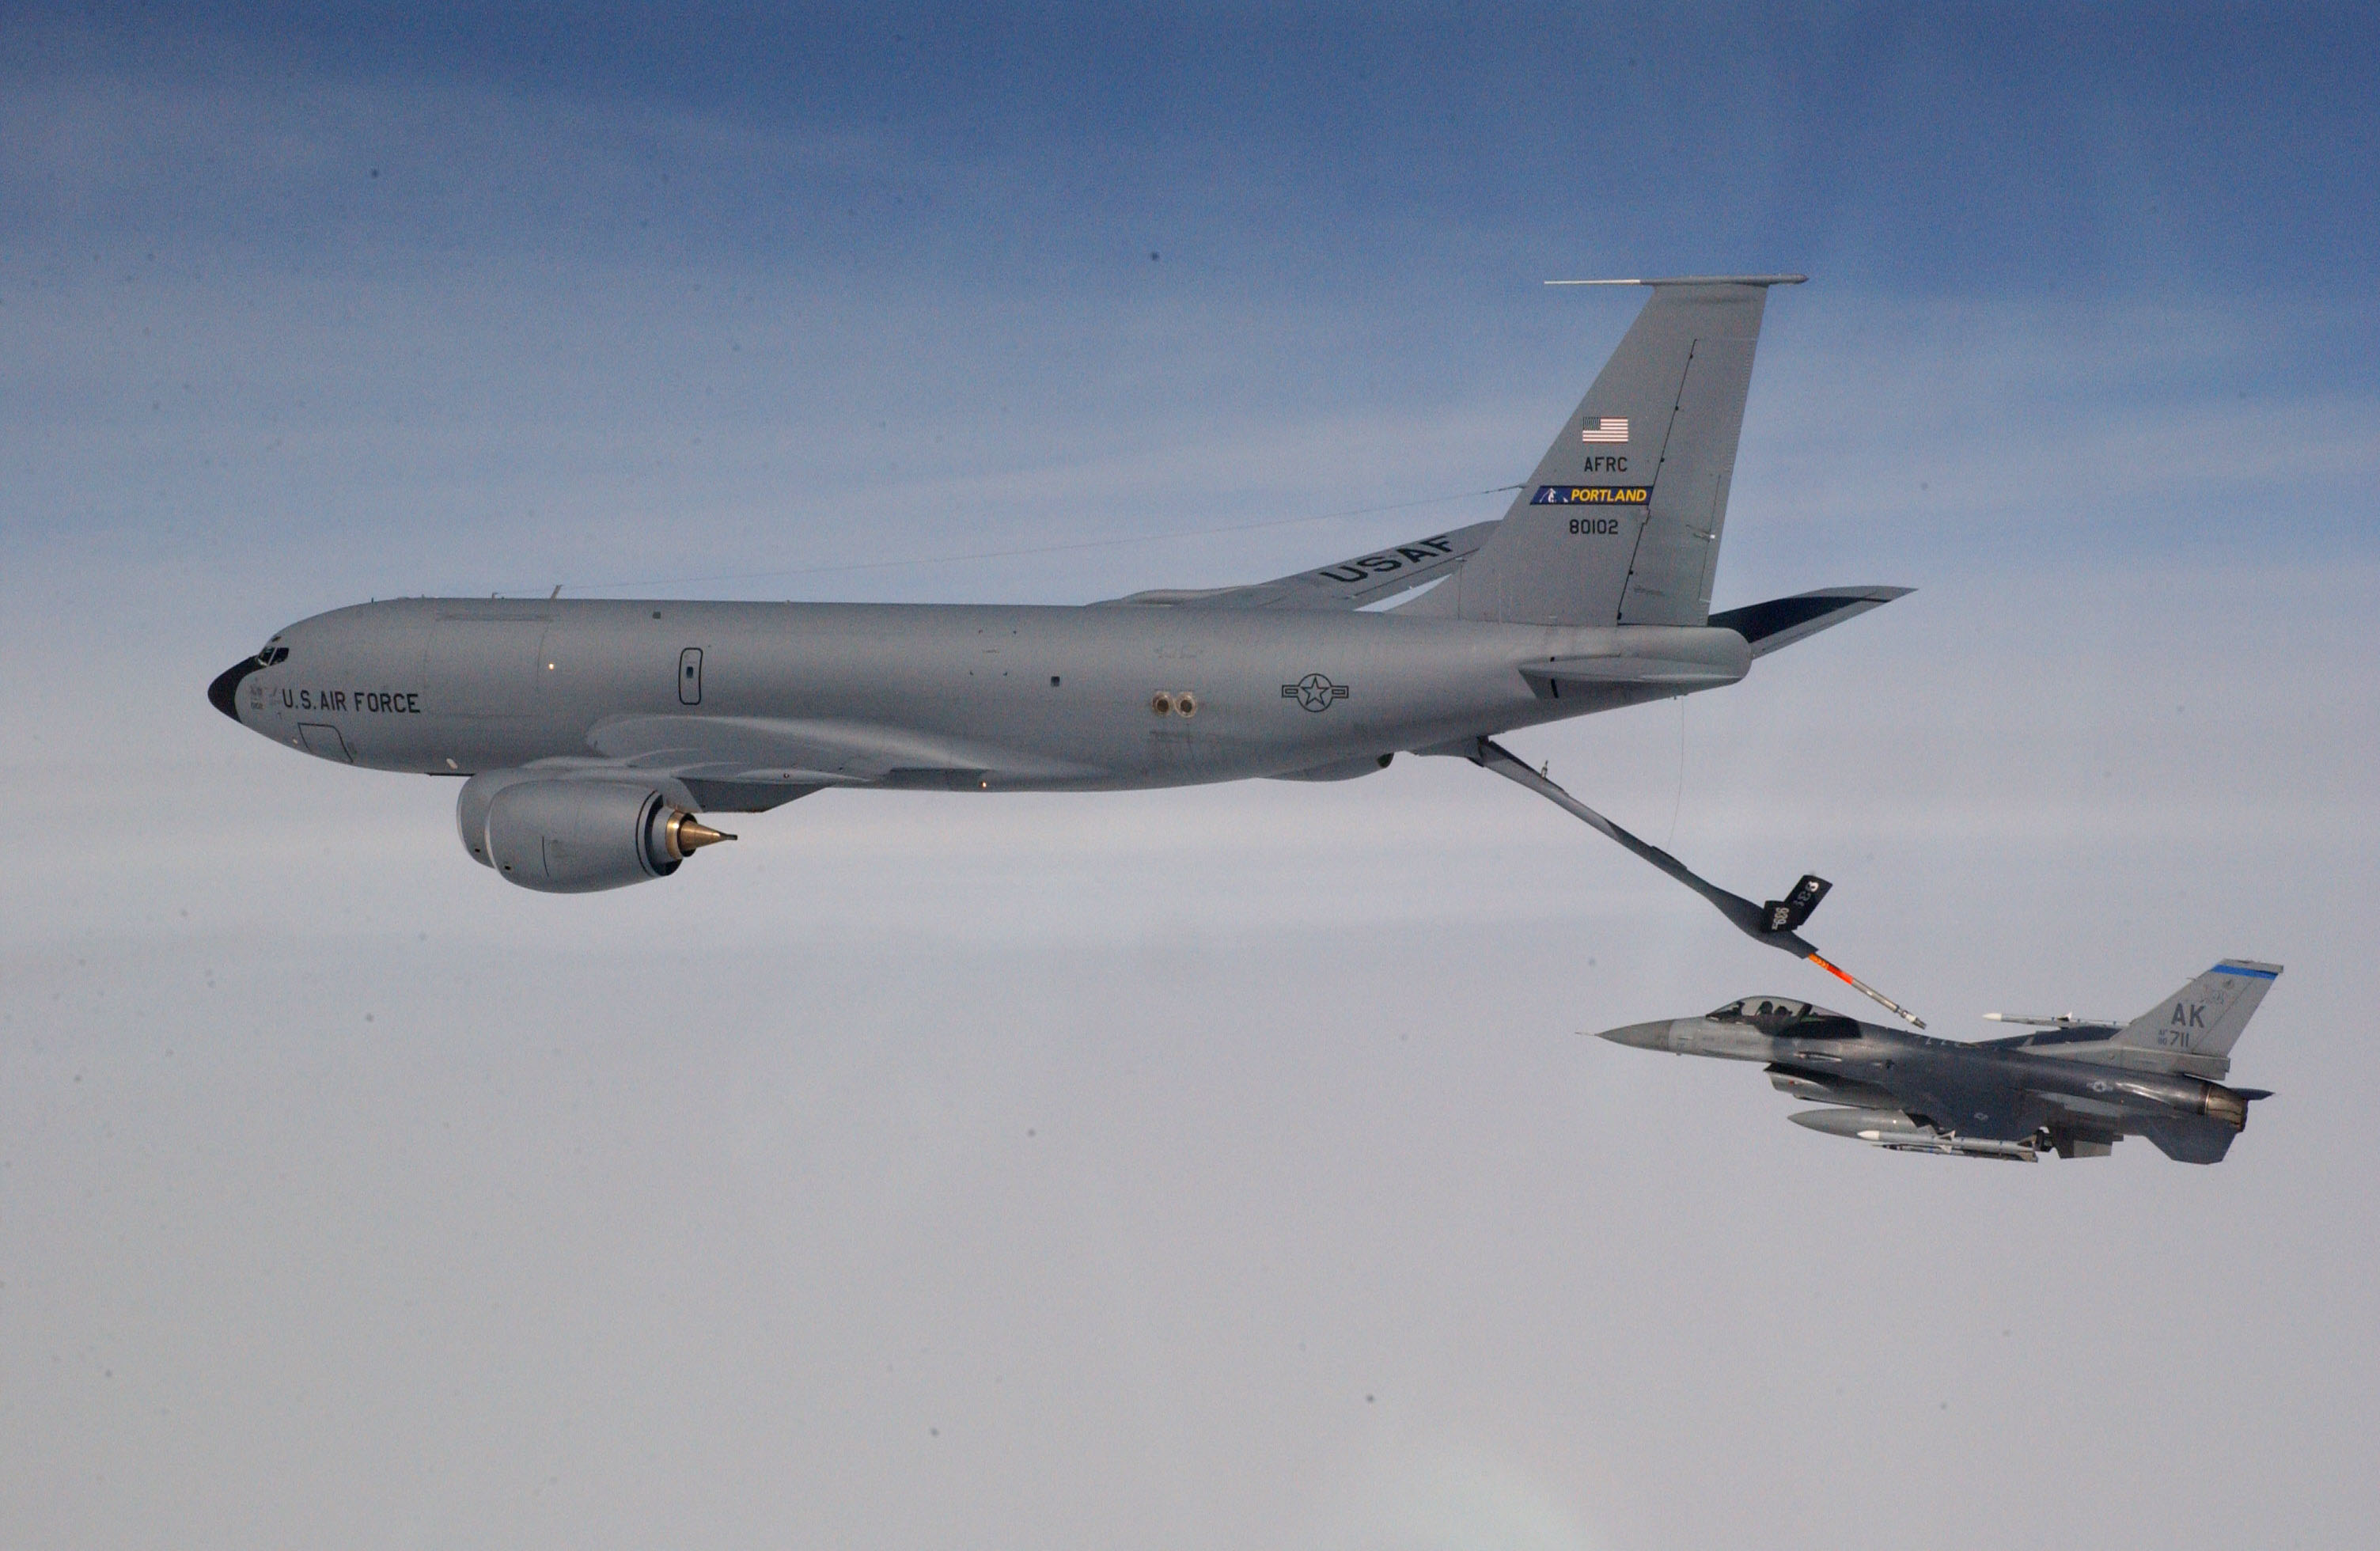 A_KC-135_Stratotanker_refuels_an_F-16.jpg